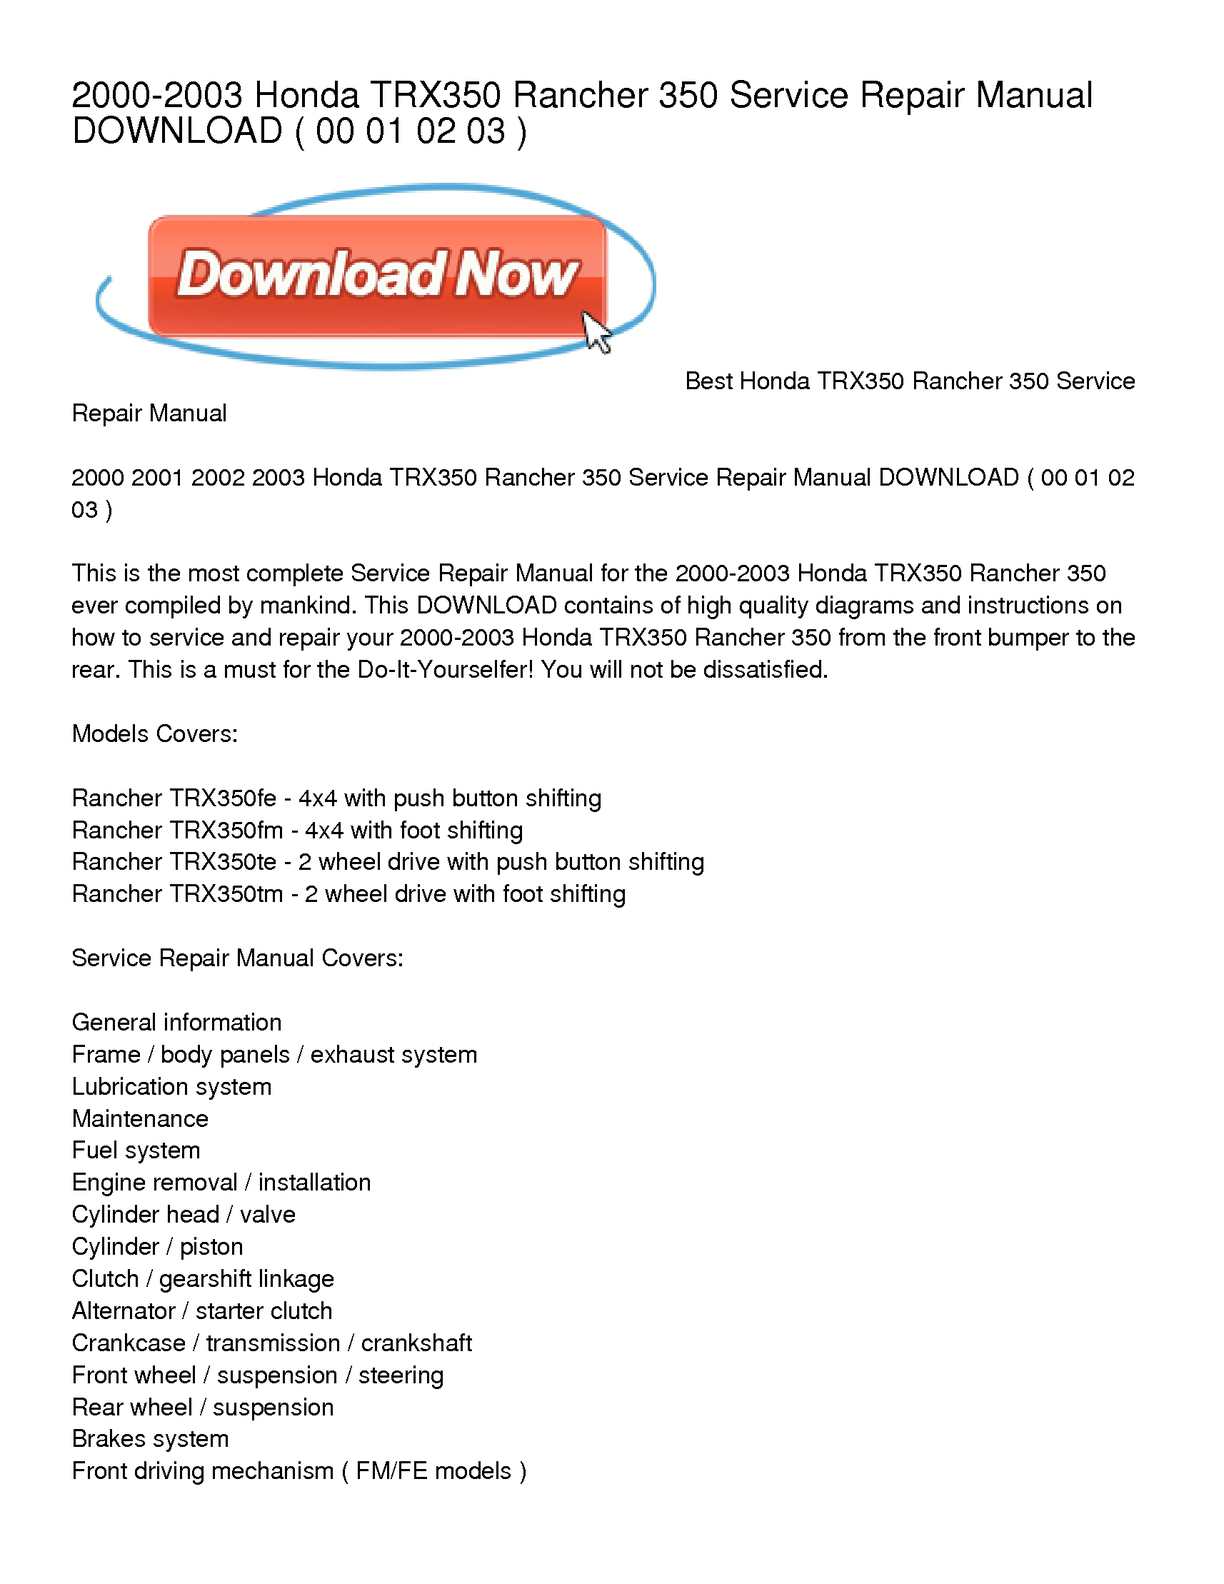 Honda jazz repair manual free download